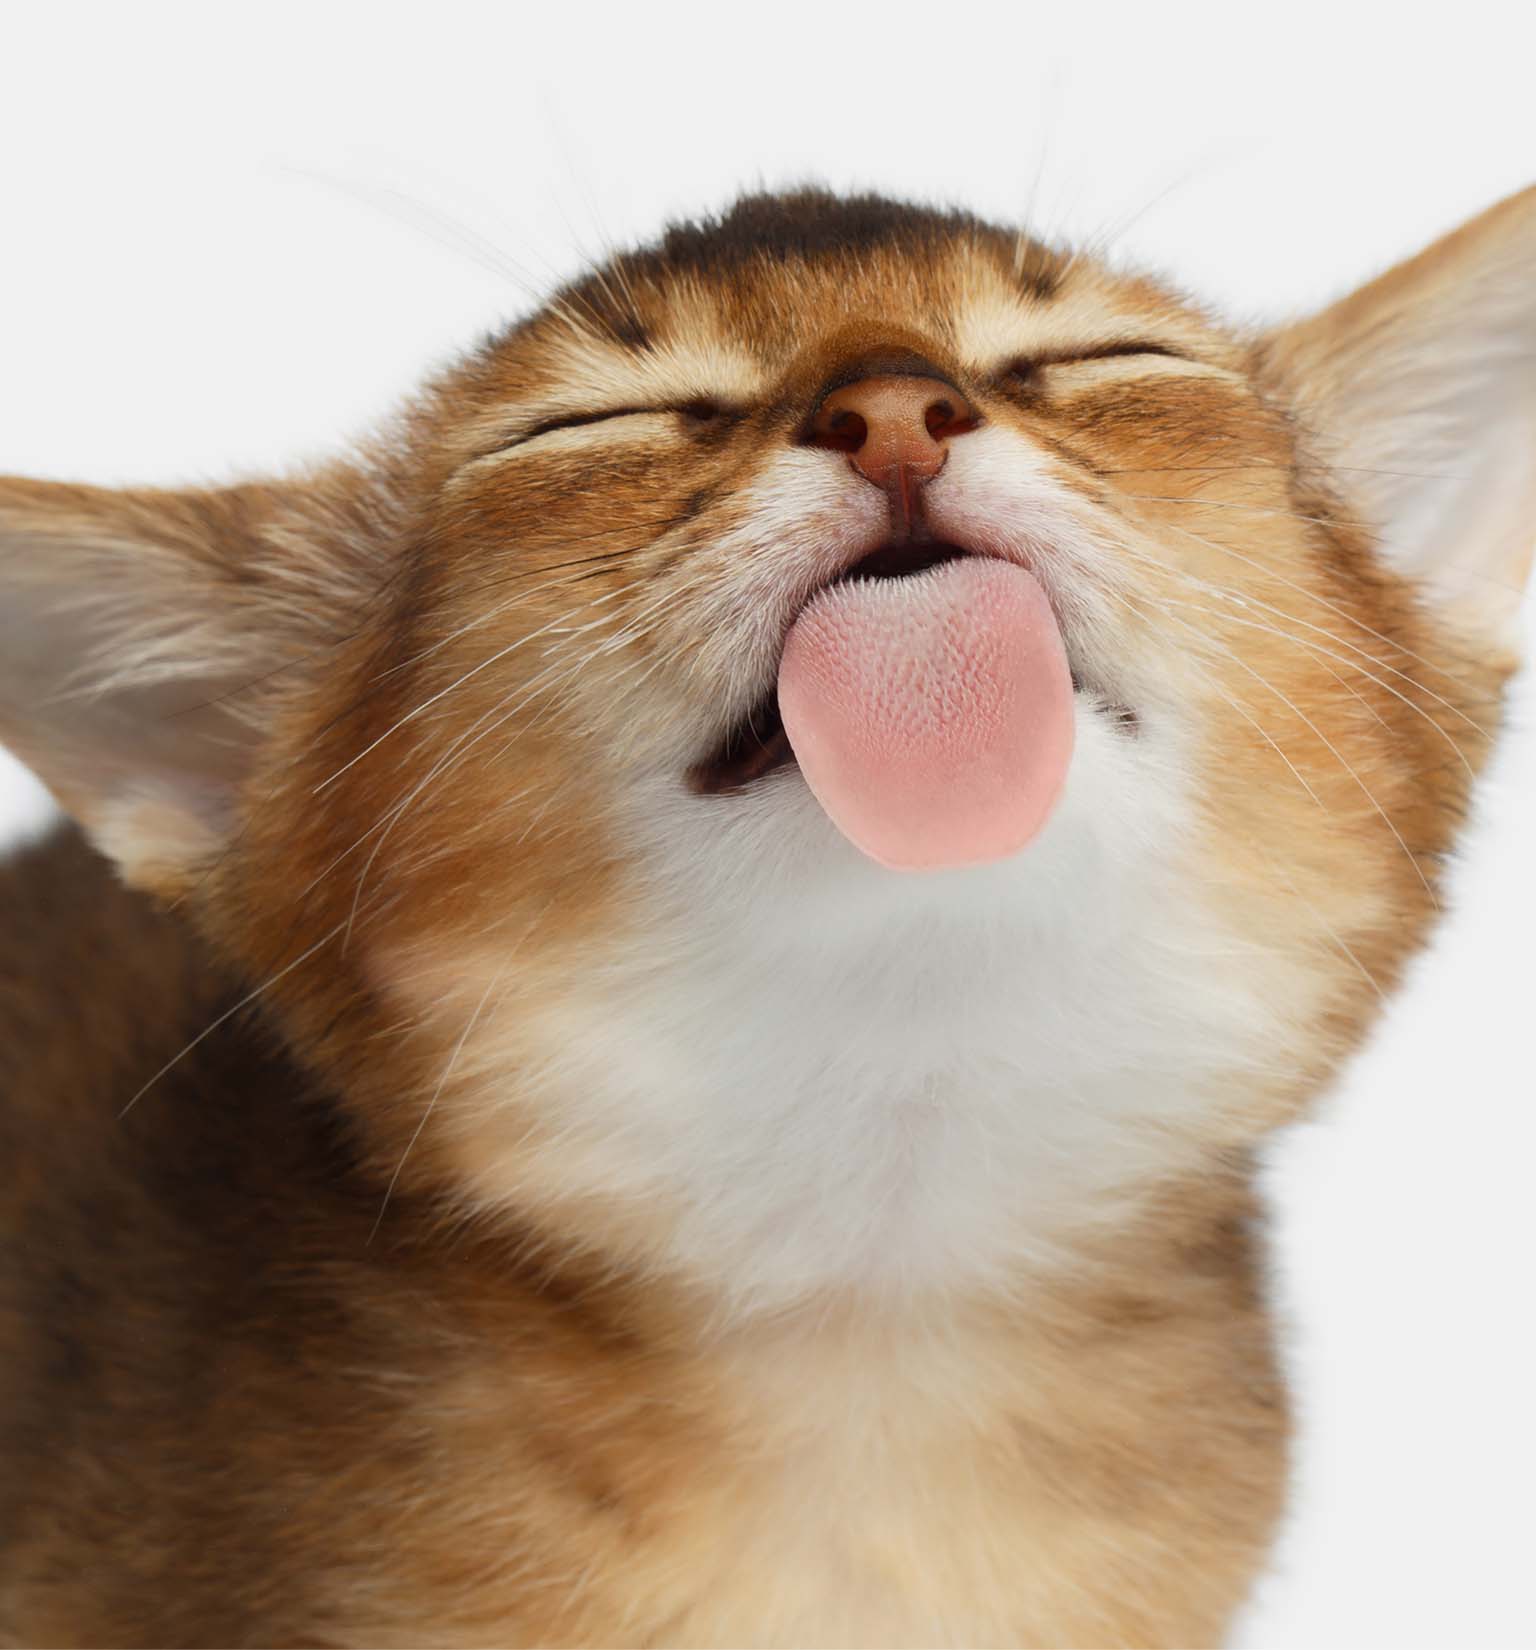 6 Gründe, warum deine Katze gerne an dir leckt